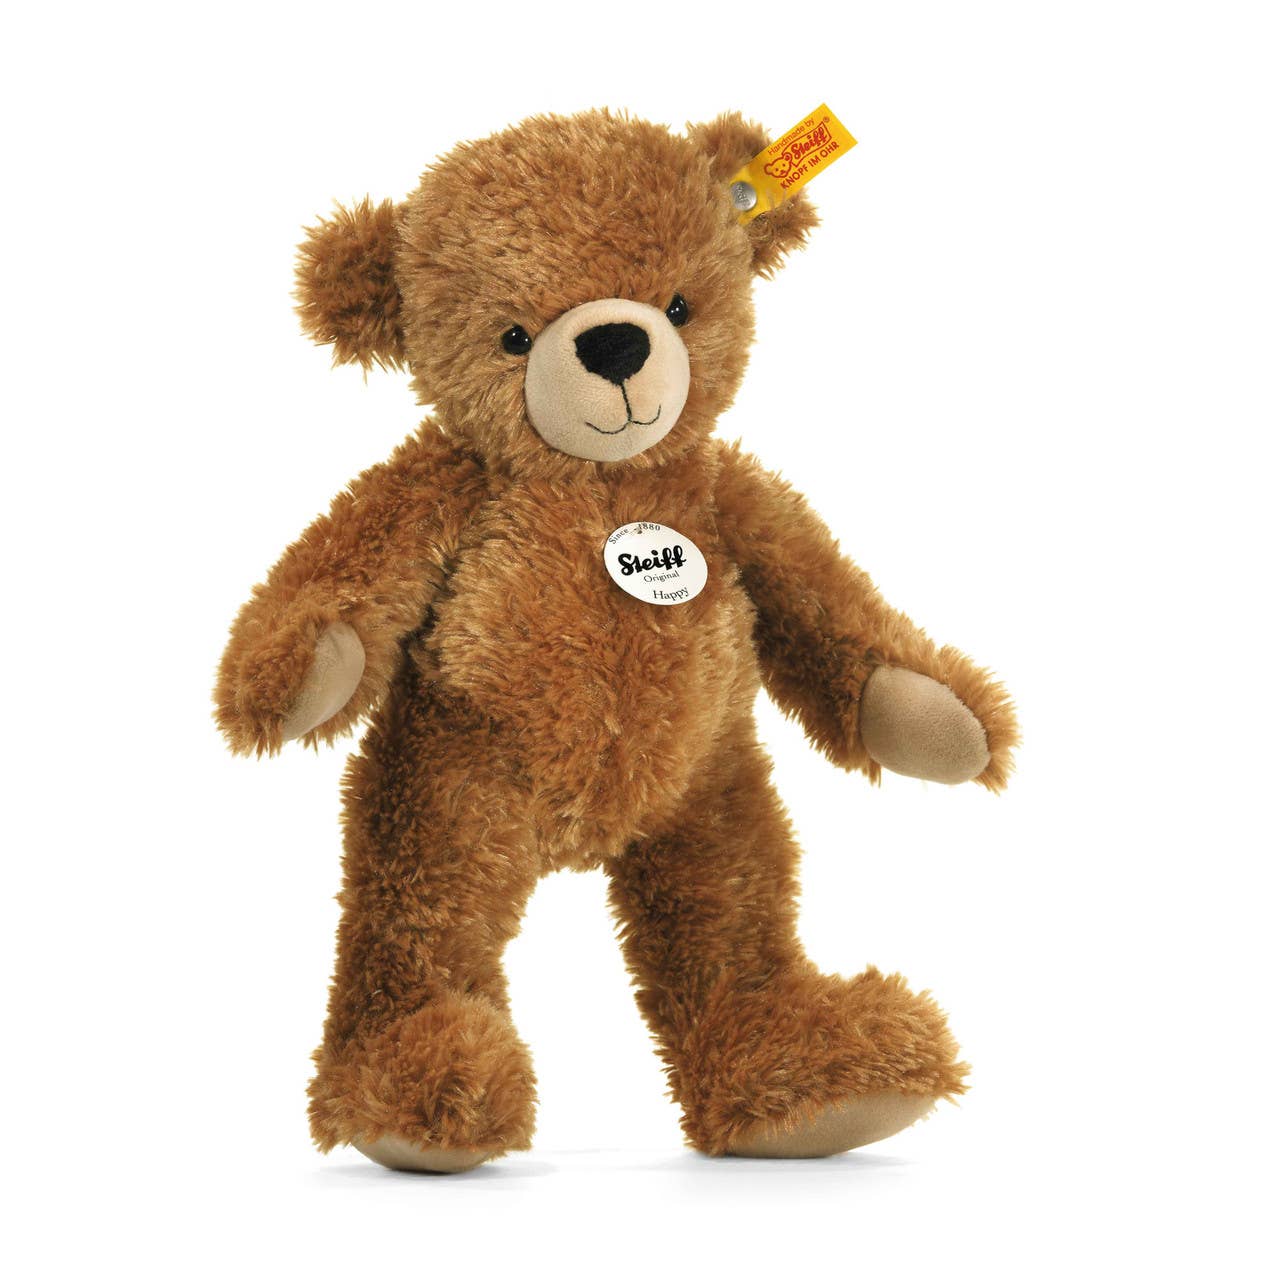 Happy Teddy Bear Plush Toy, 16 Inches